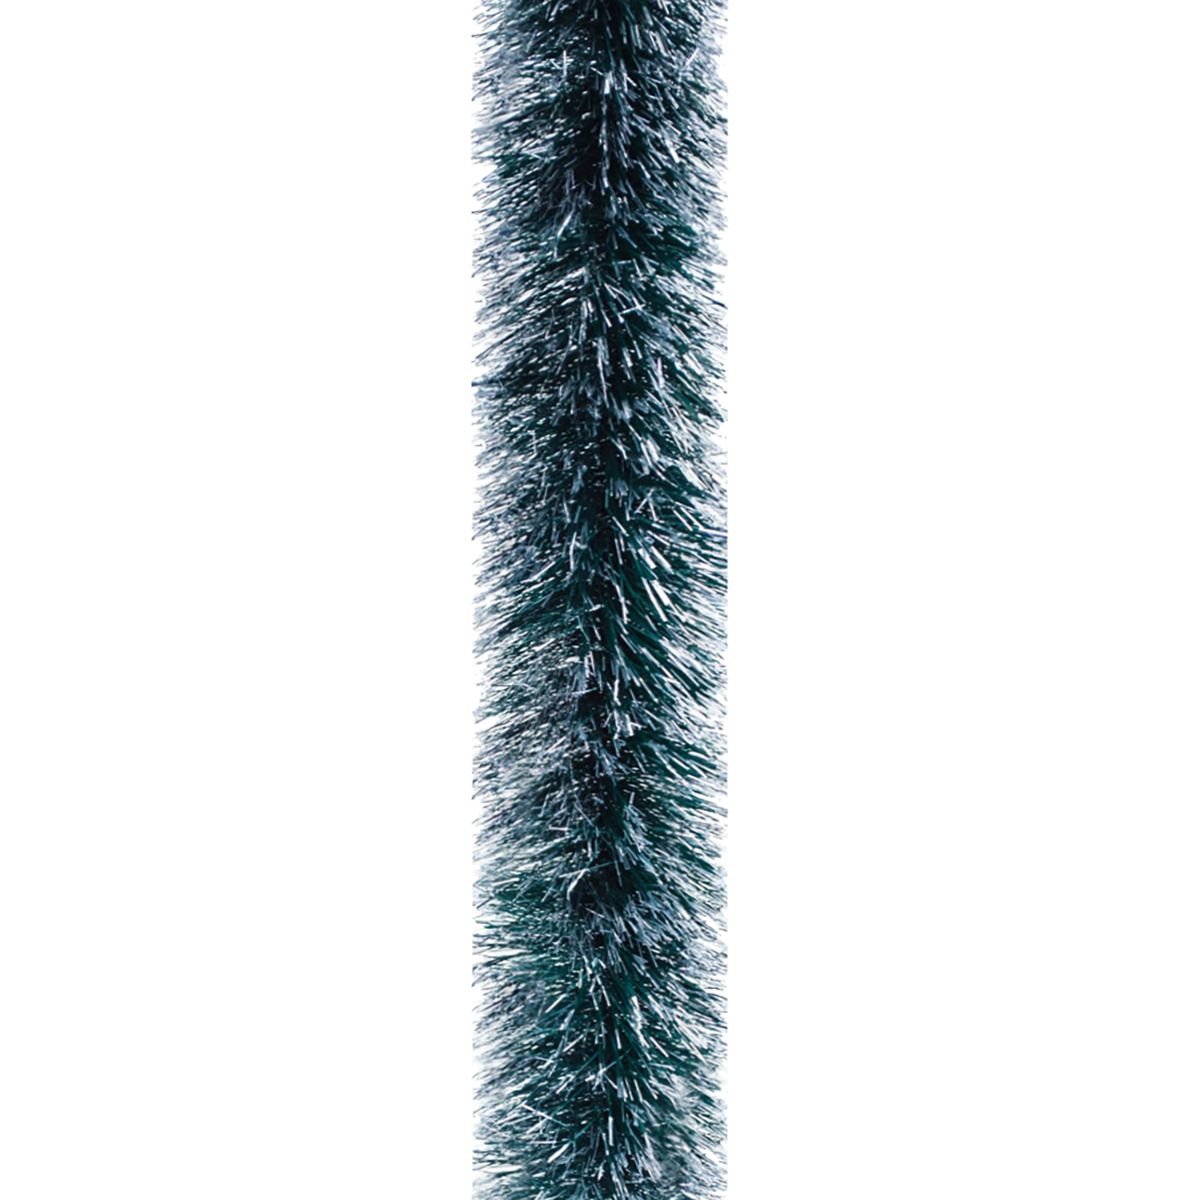 Мишура Novogod'ko 10 см 3 м зеленая матовая с серебрянными кончиками (980323) - фото 1